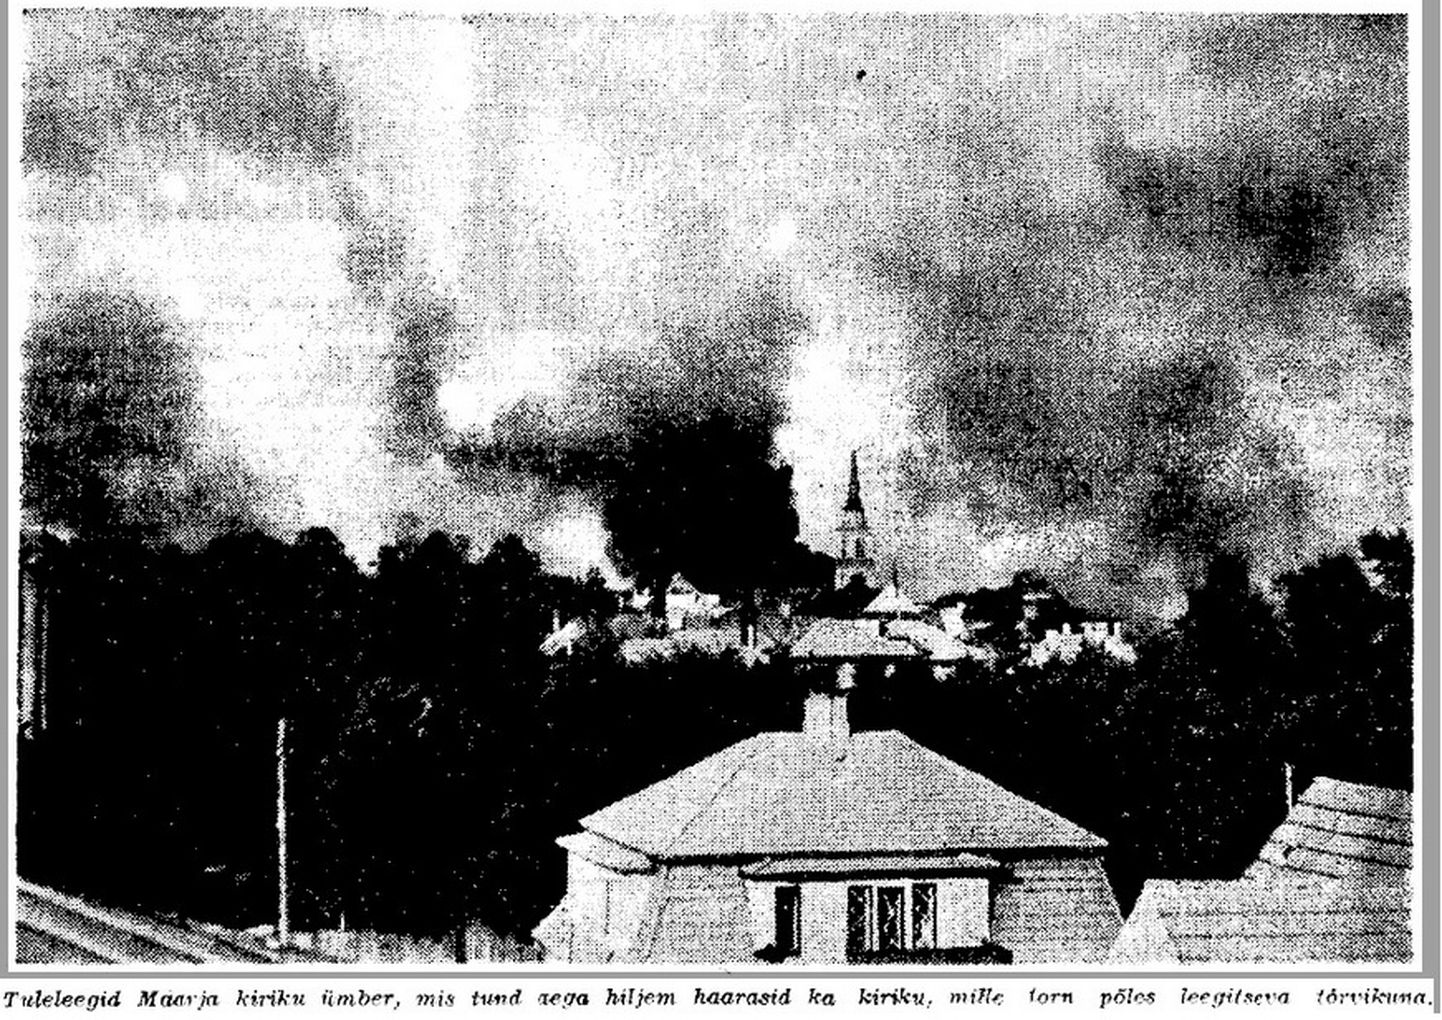 Tuleleegid ja suits Maarja kiriku ümber. Tund aega hiljem sai süütemürsutabamuse ka kirik, mille torn põles nagu tõrvik ja kukkus kell 22.30 ümber. Foto ilmus Postimehes 11. juulil 1943.